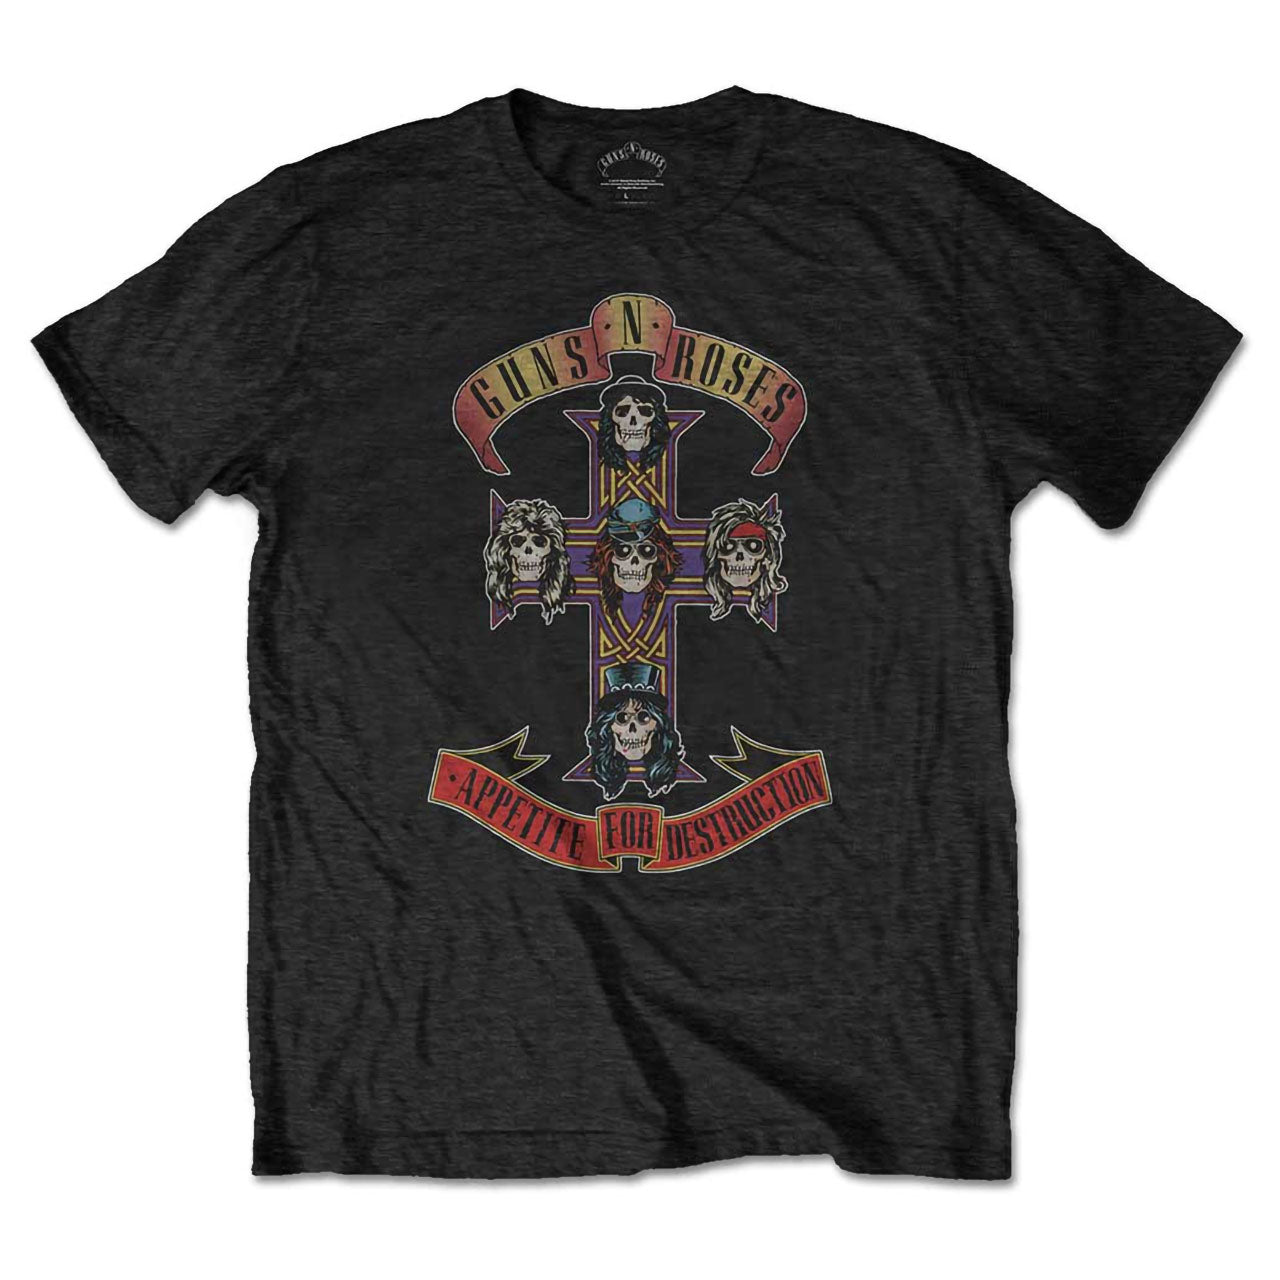 Guns N' Roses - Appetite for Destruction (T-Shirt)